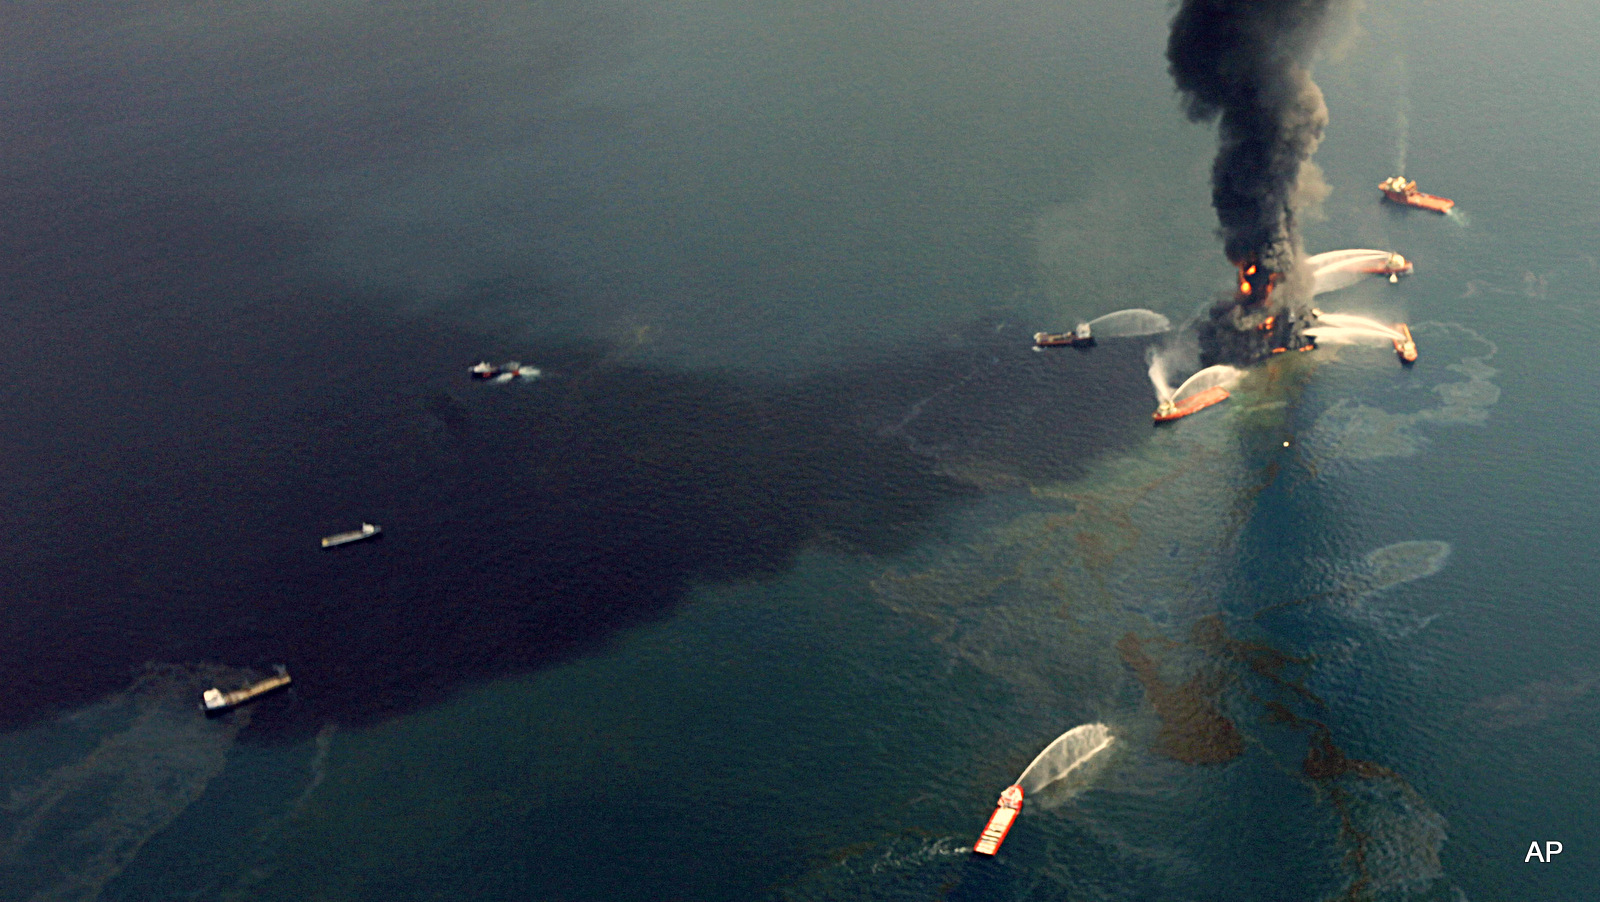 Игольн ца залив стый смех. Разлив нефти в 2010 году в мексиканском заливе. Апрель 2010 мексиканский залив. Глубоководный Горизонт разлив нефти. Взрыв нефтяной платформы Deepwater Horizon - 20 апреля 2010 года.